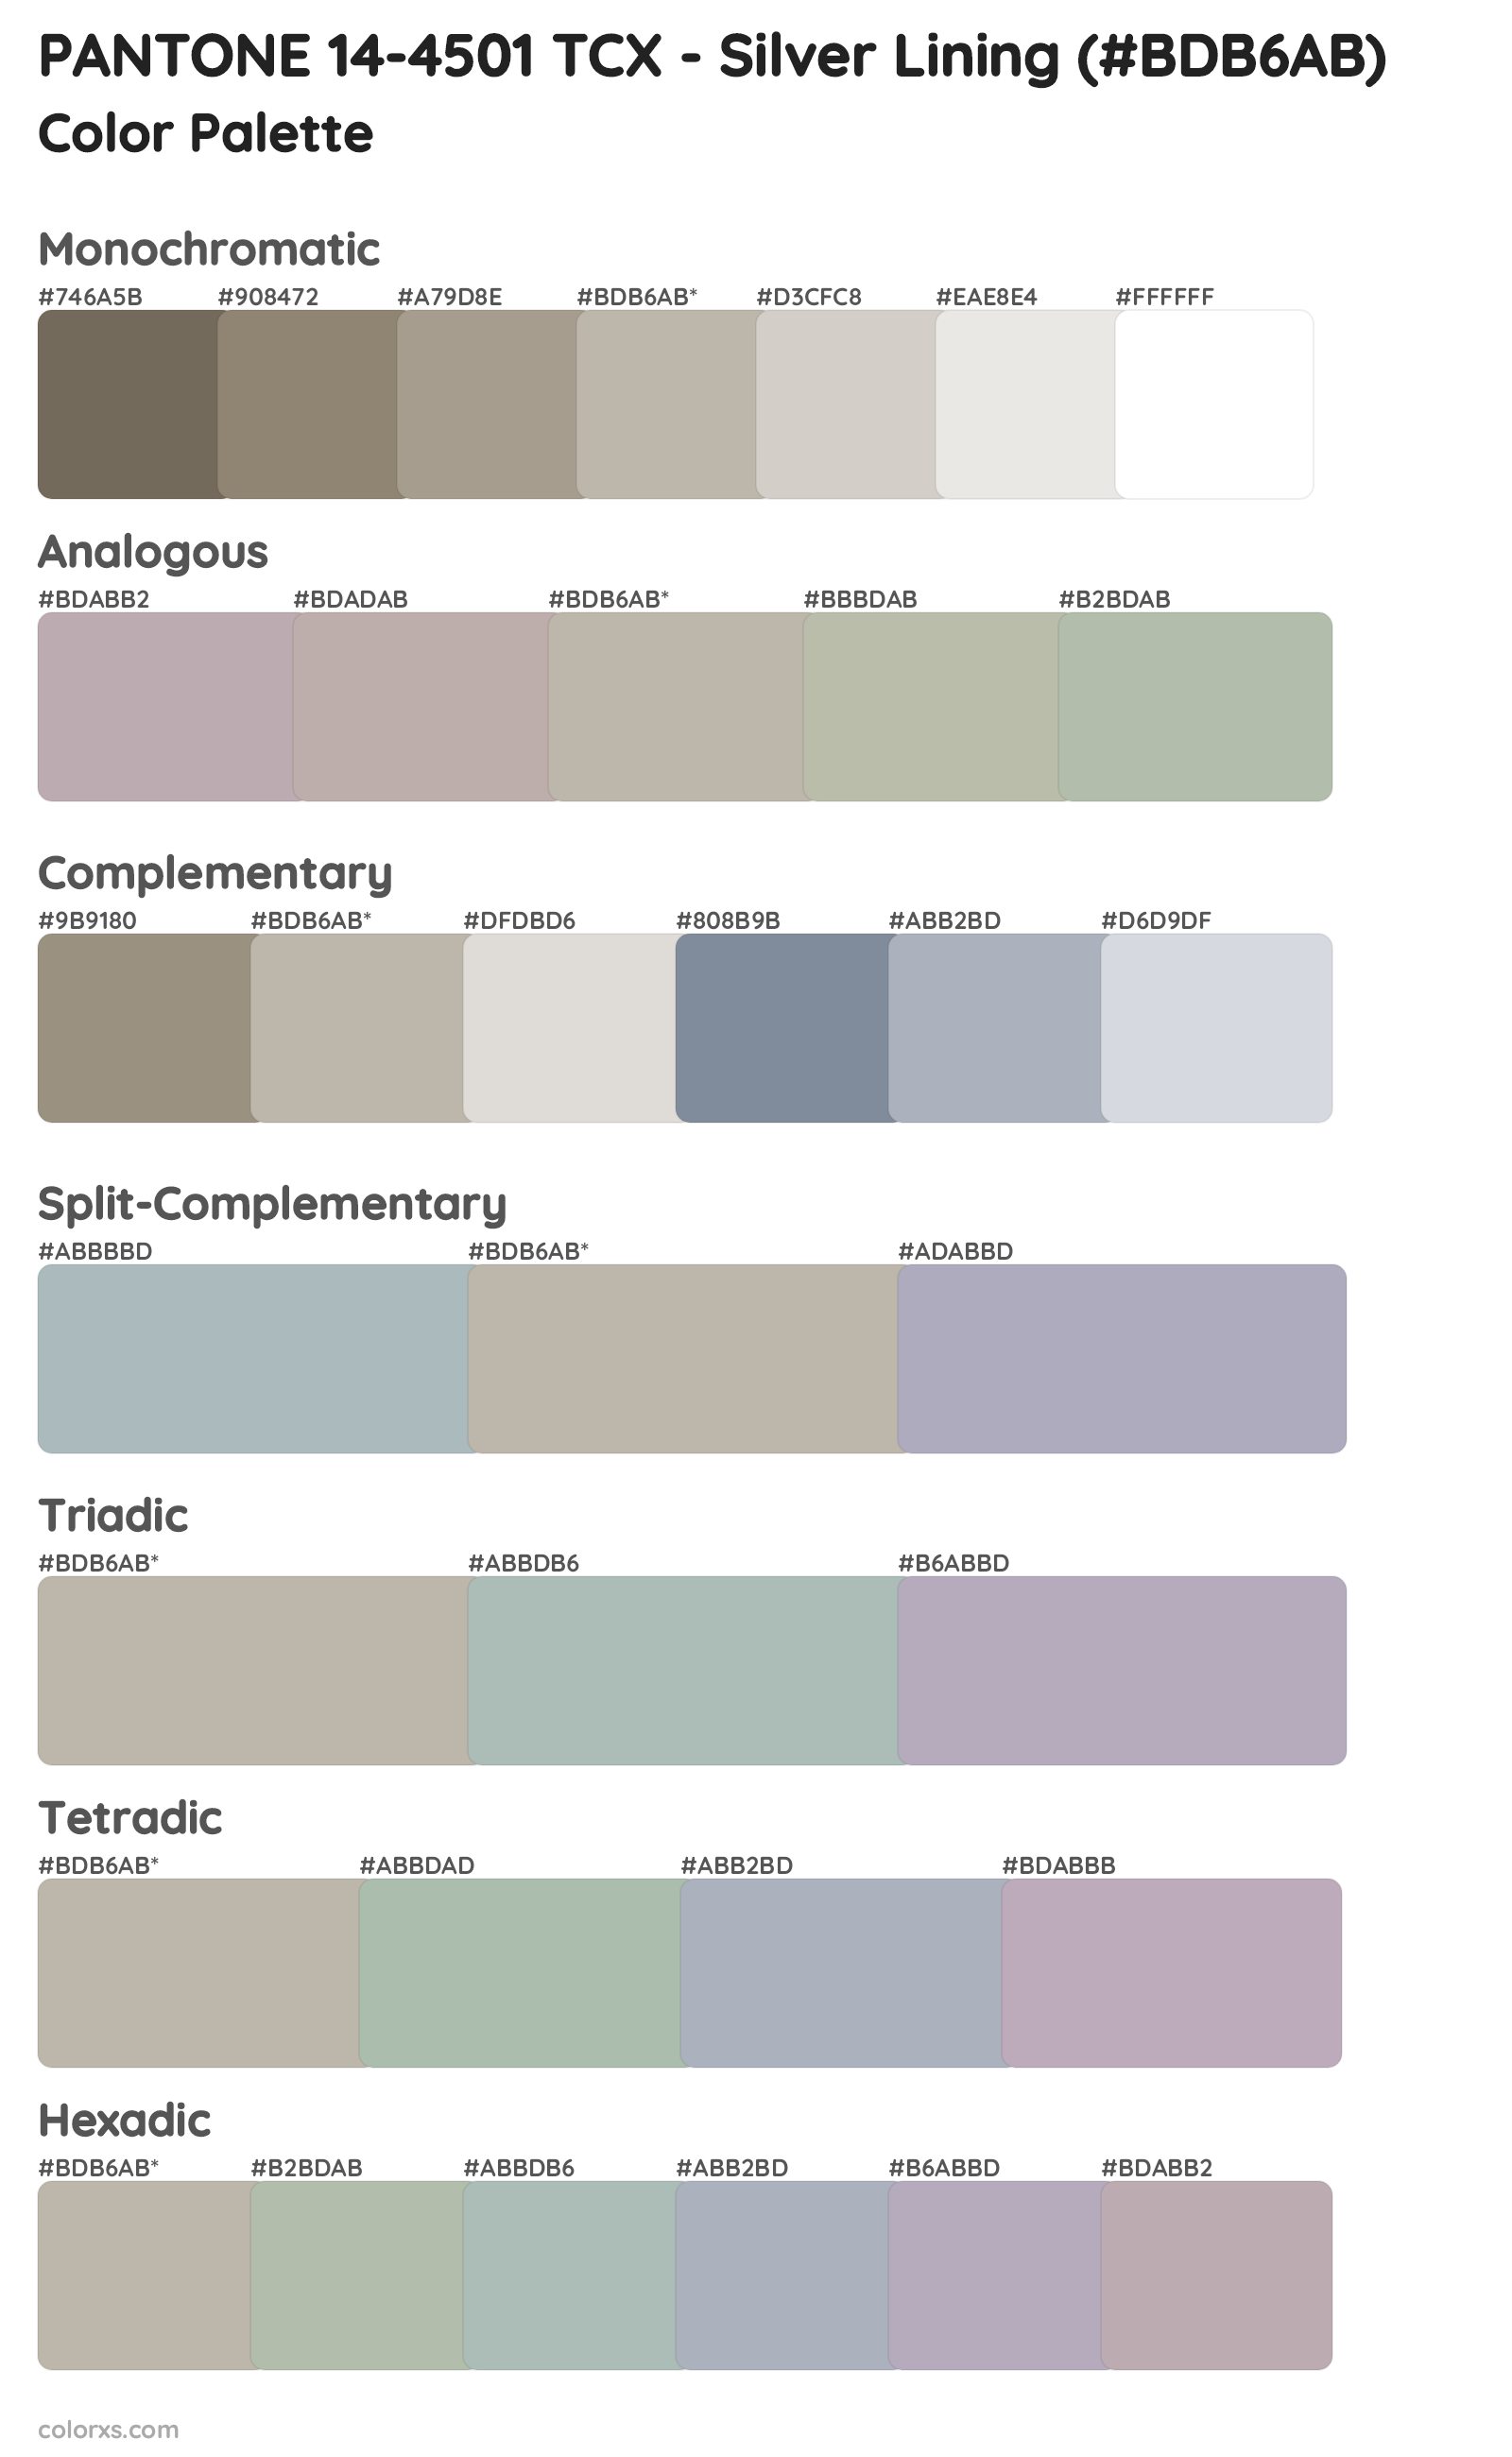 PANTONE 14-4501 TCX - Silver Lining Color Scheme Palettes